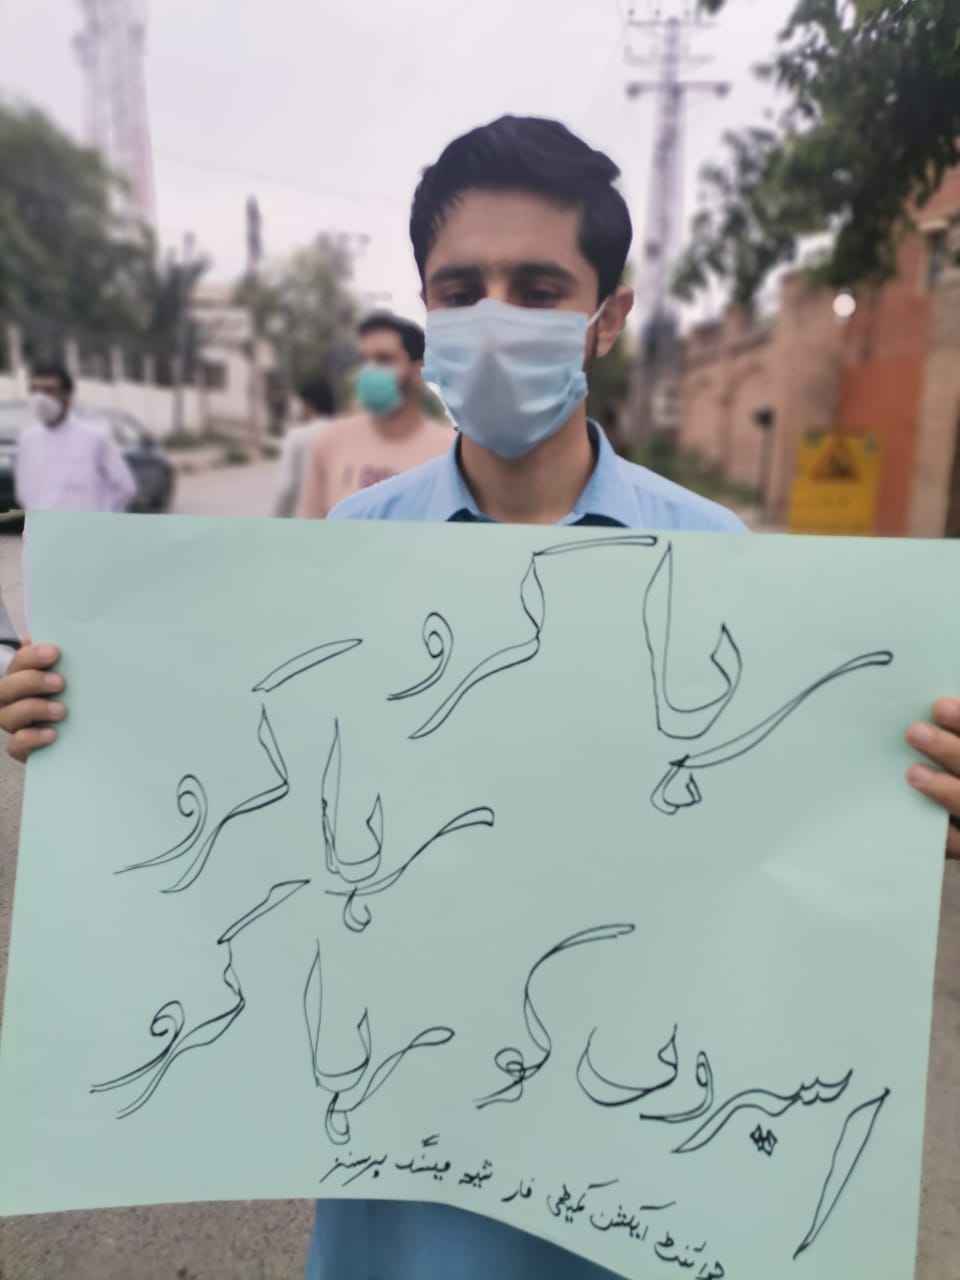 لاپتہ شیعہ افراد کی بازیابی کیلئے پشاور میں بھی احتجاج شروع